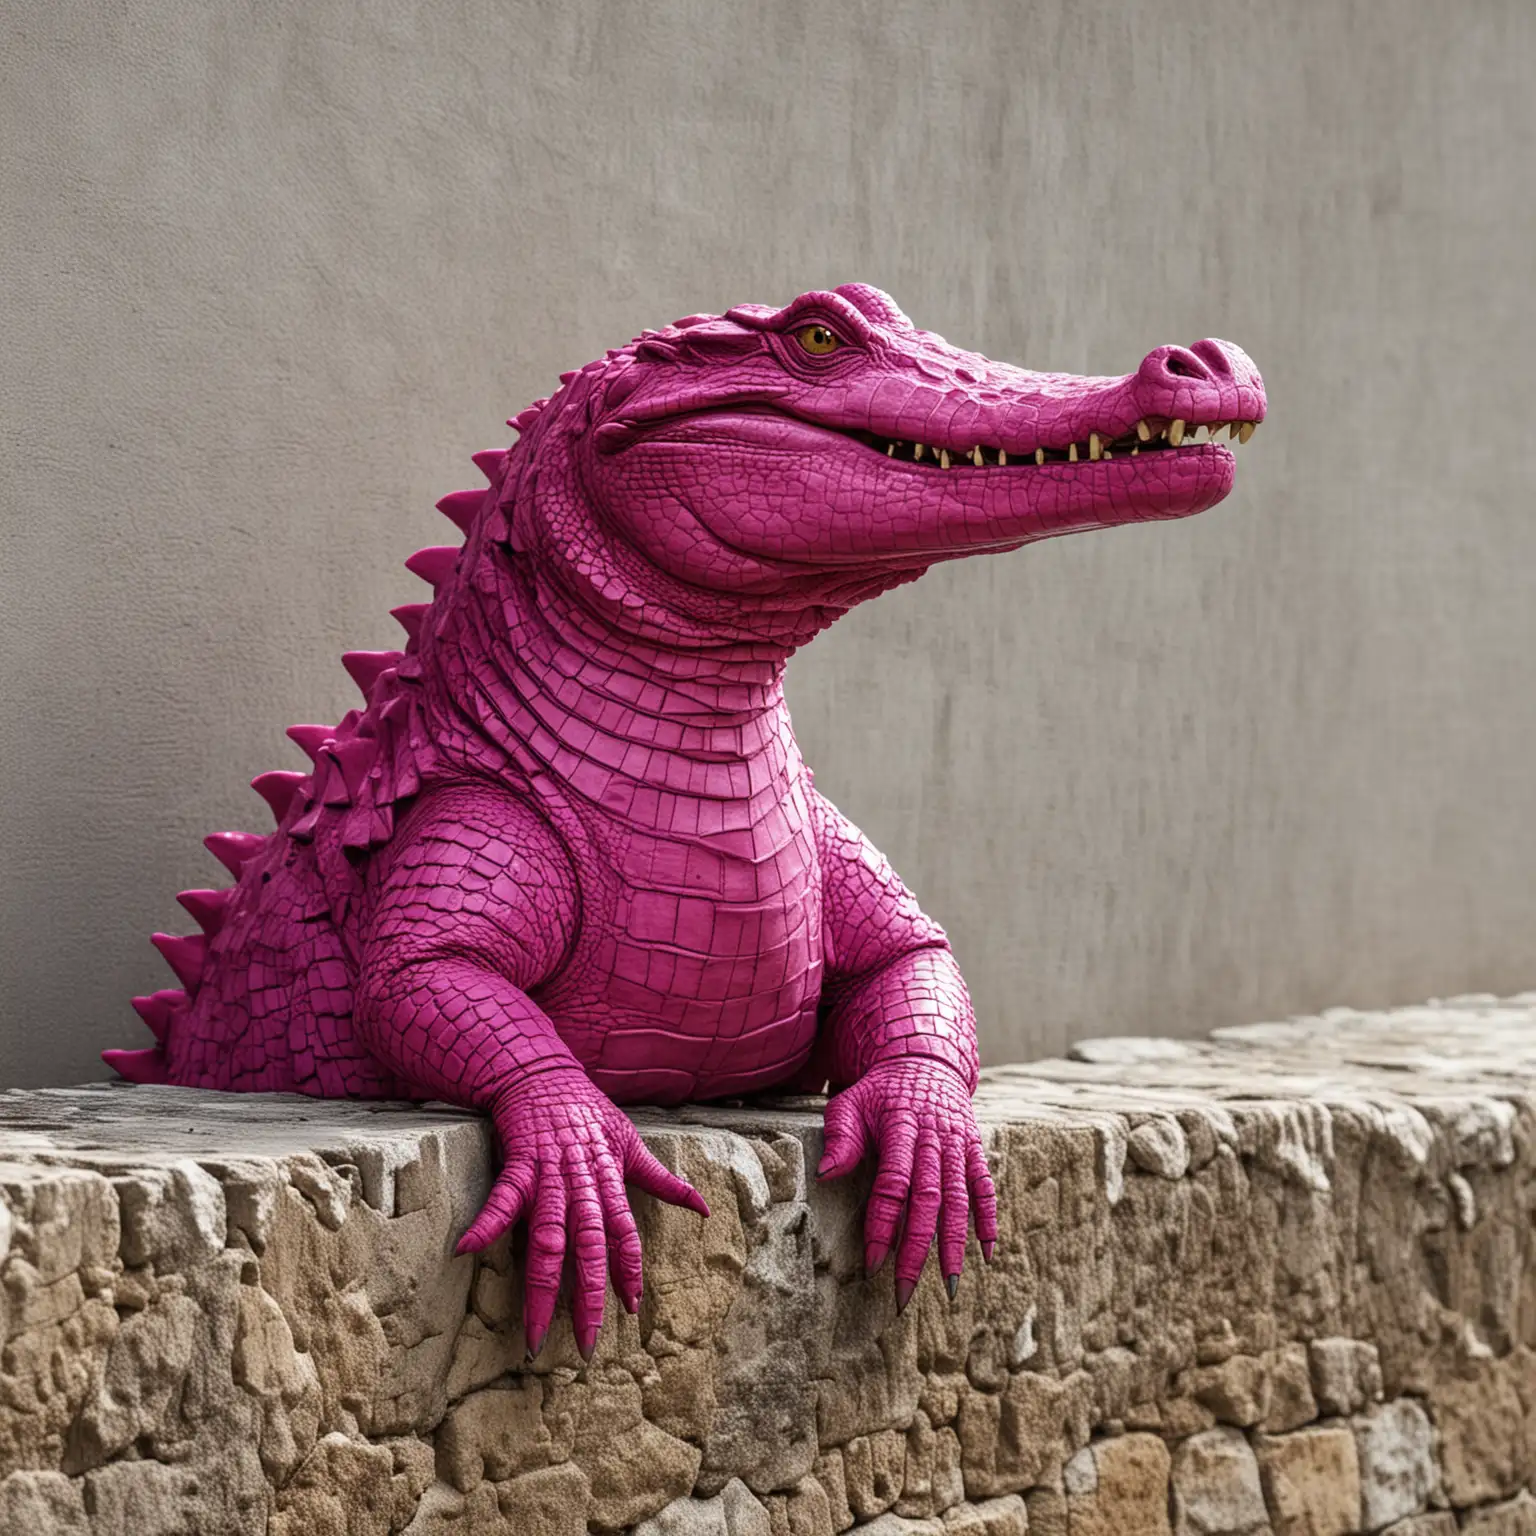 a magenta crocodile sitting on a wall